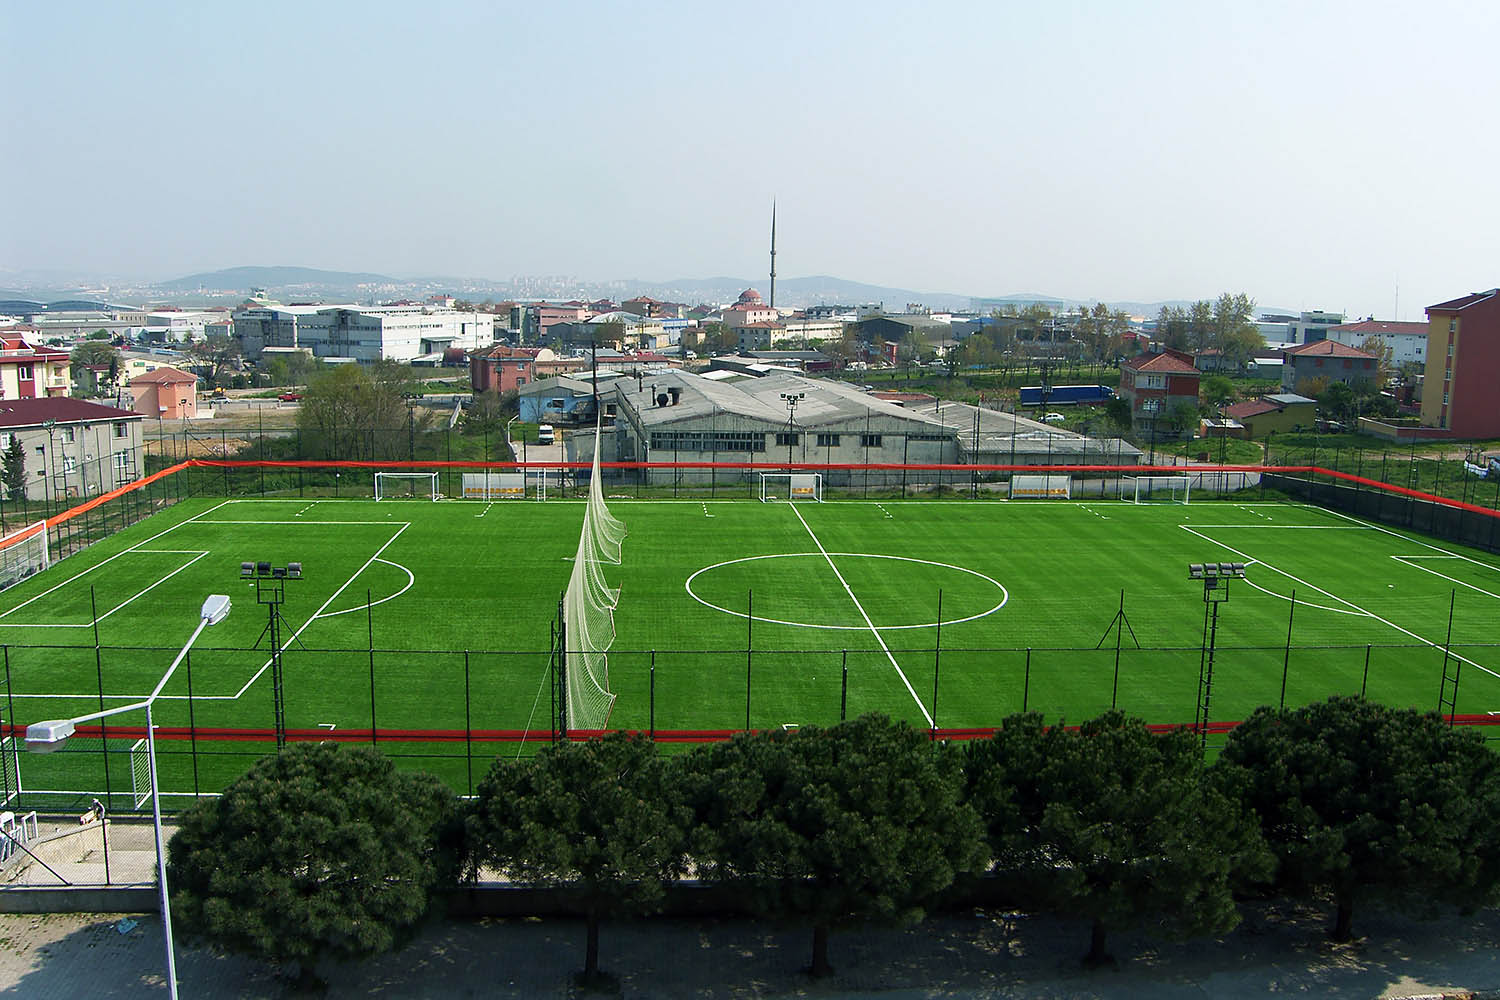 kurtkoy spor klubu profesyonel futbol sahasi 2